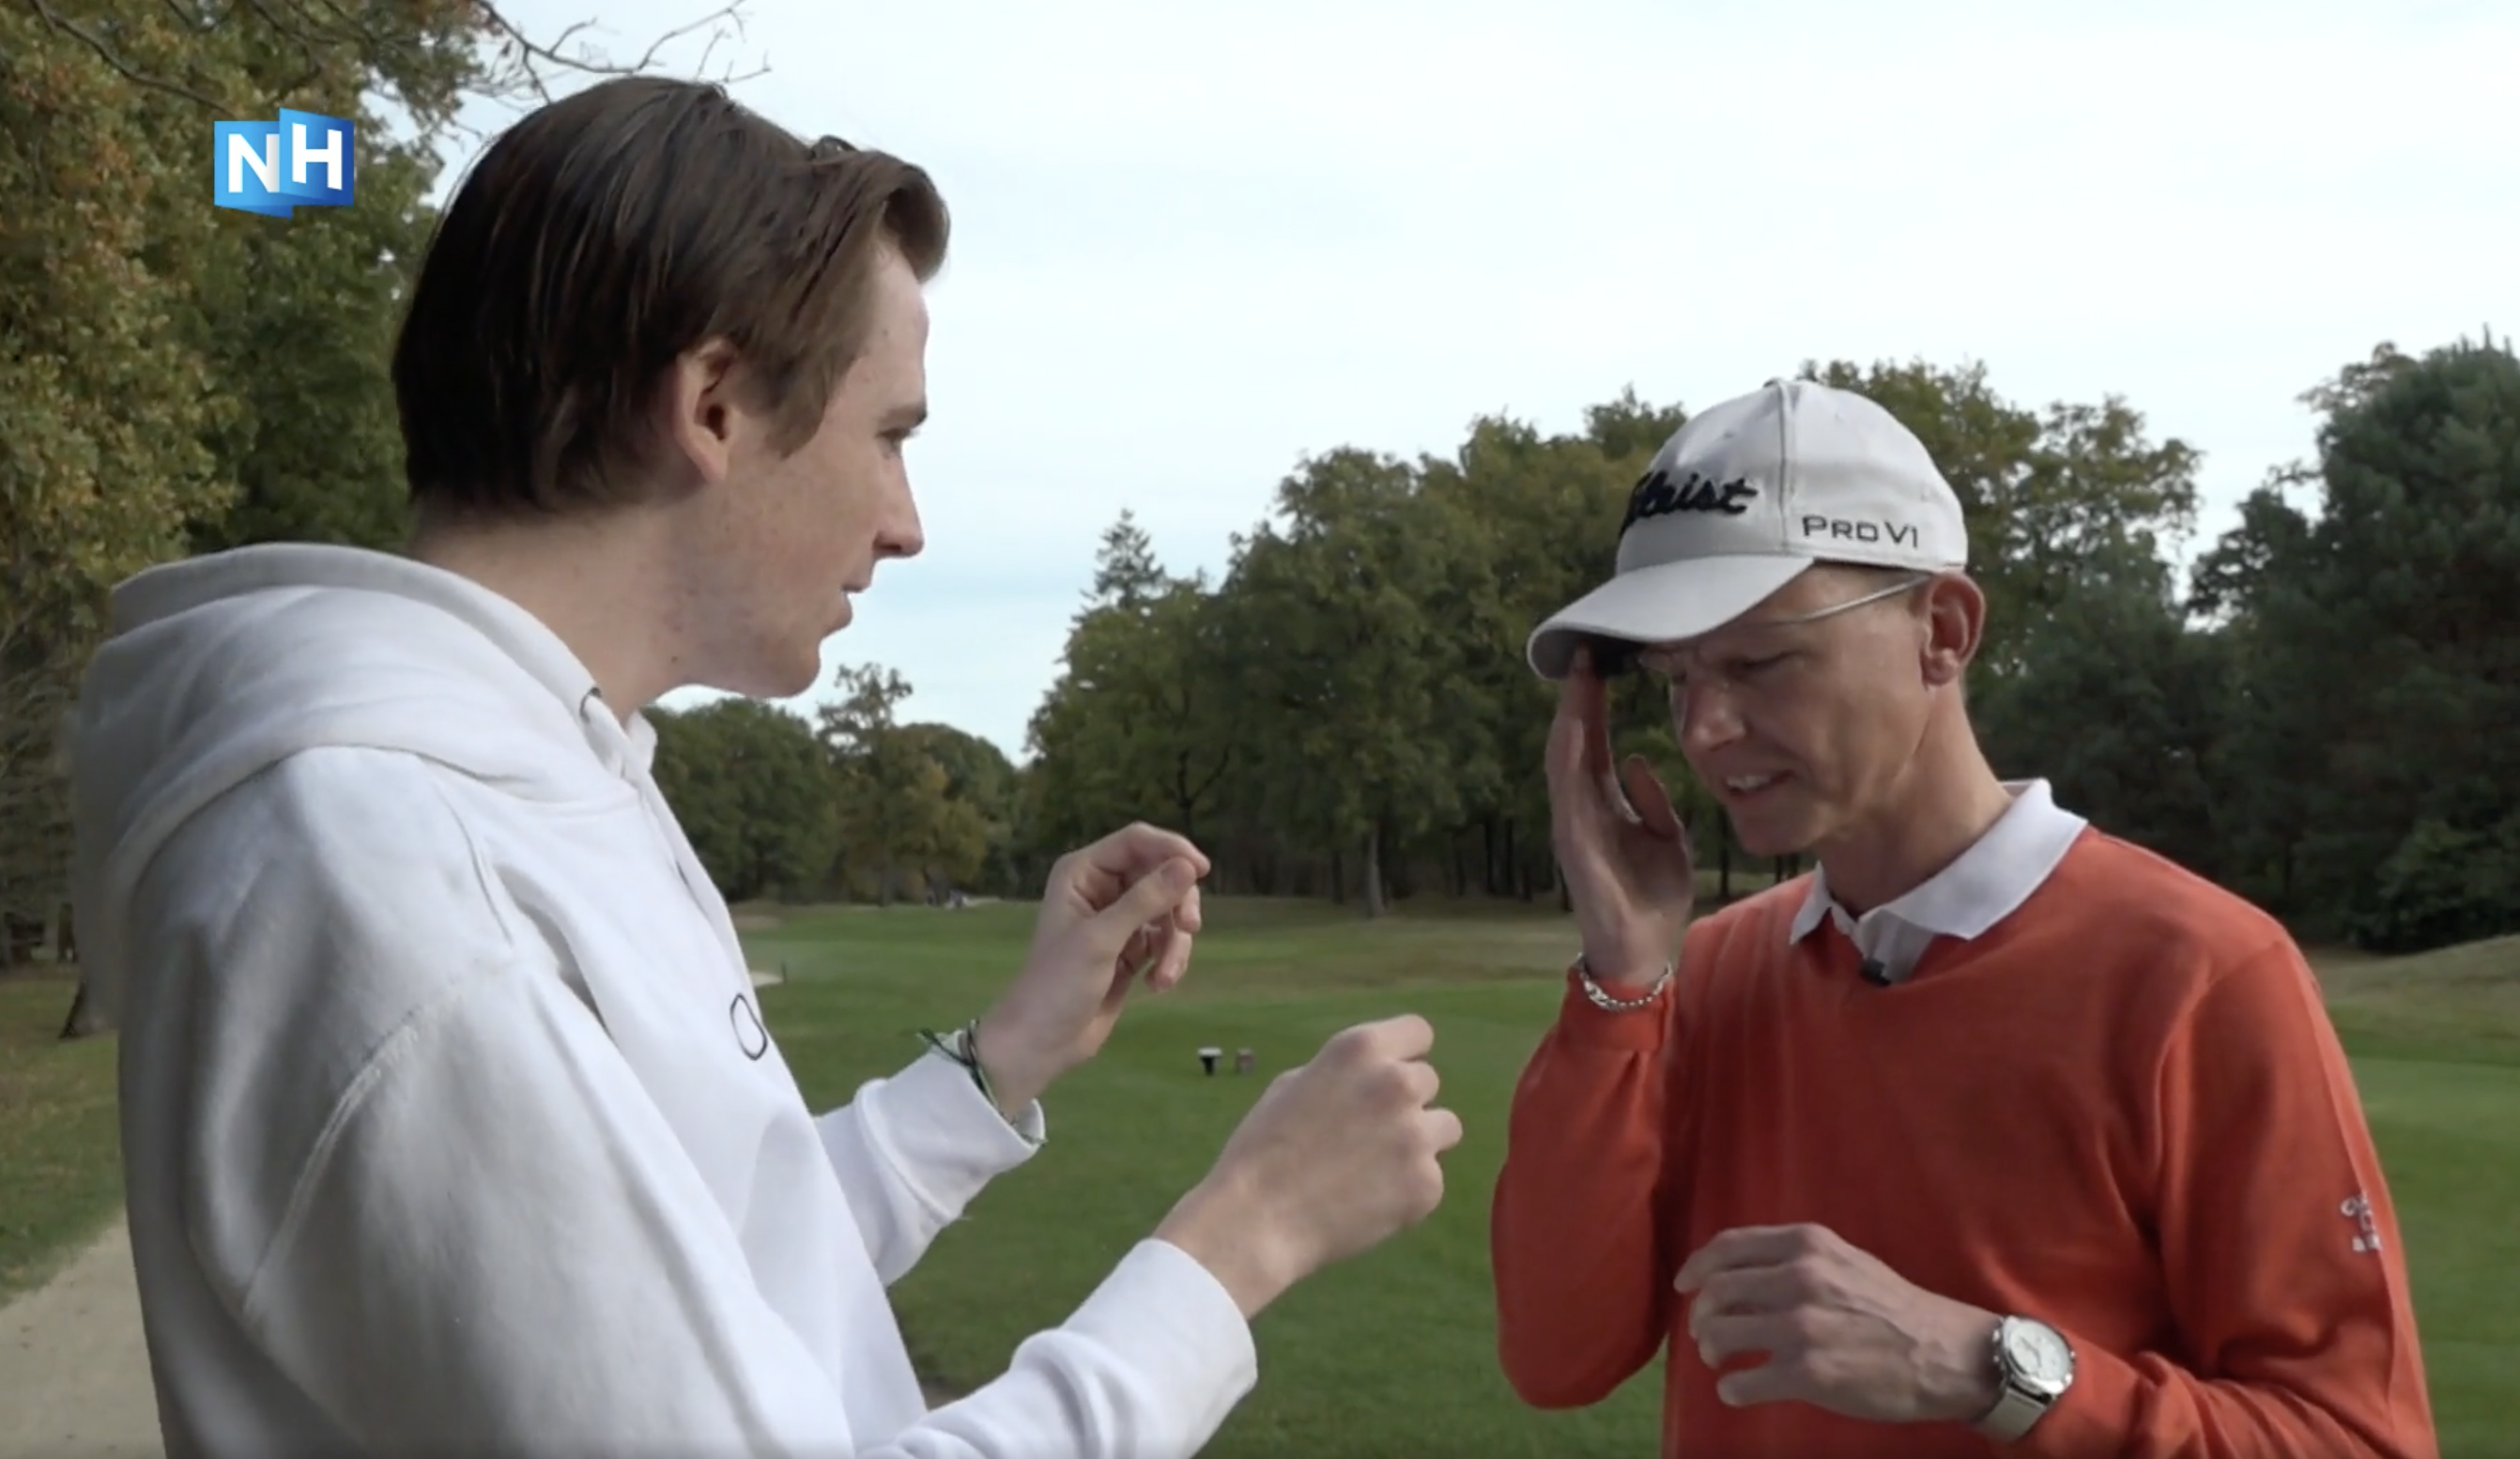 Studenten XR Lab helpen blinde golfer met slimme bril aan meer zelfstandigheid